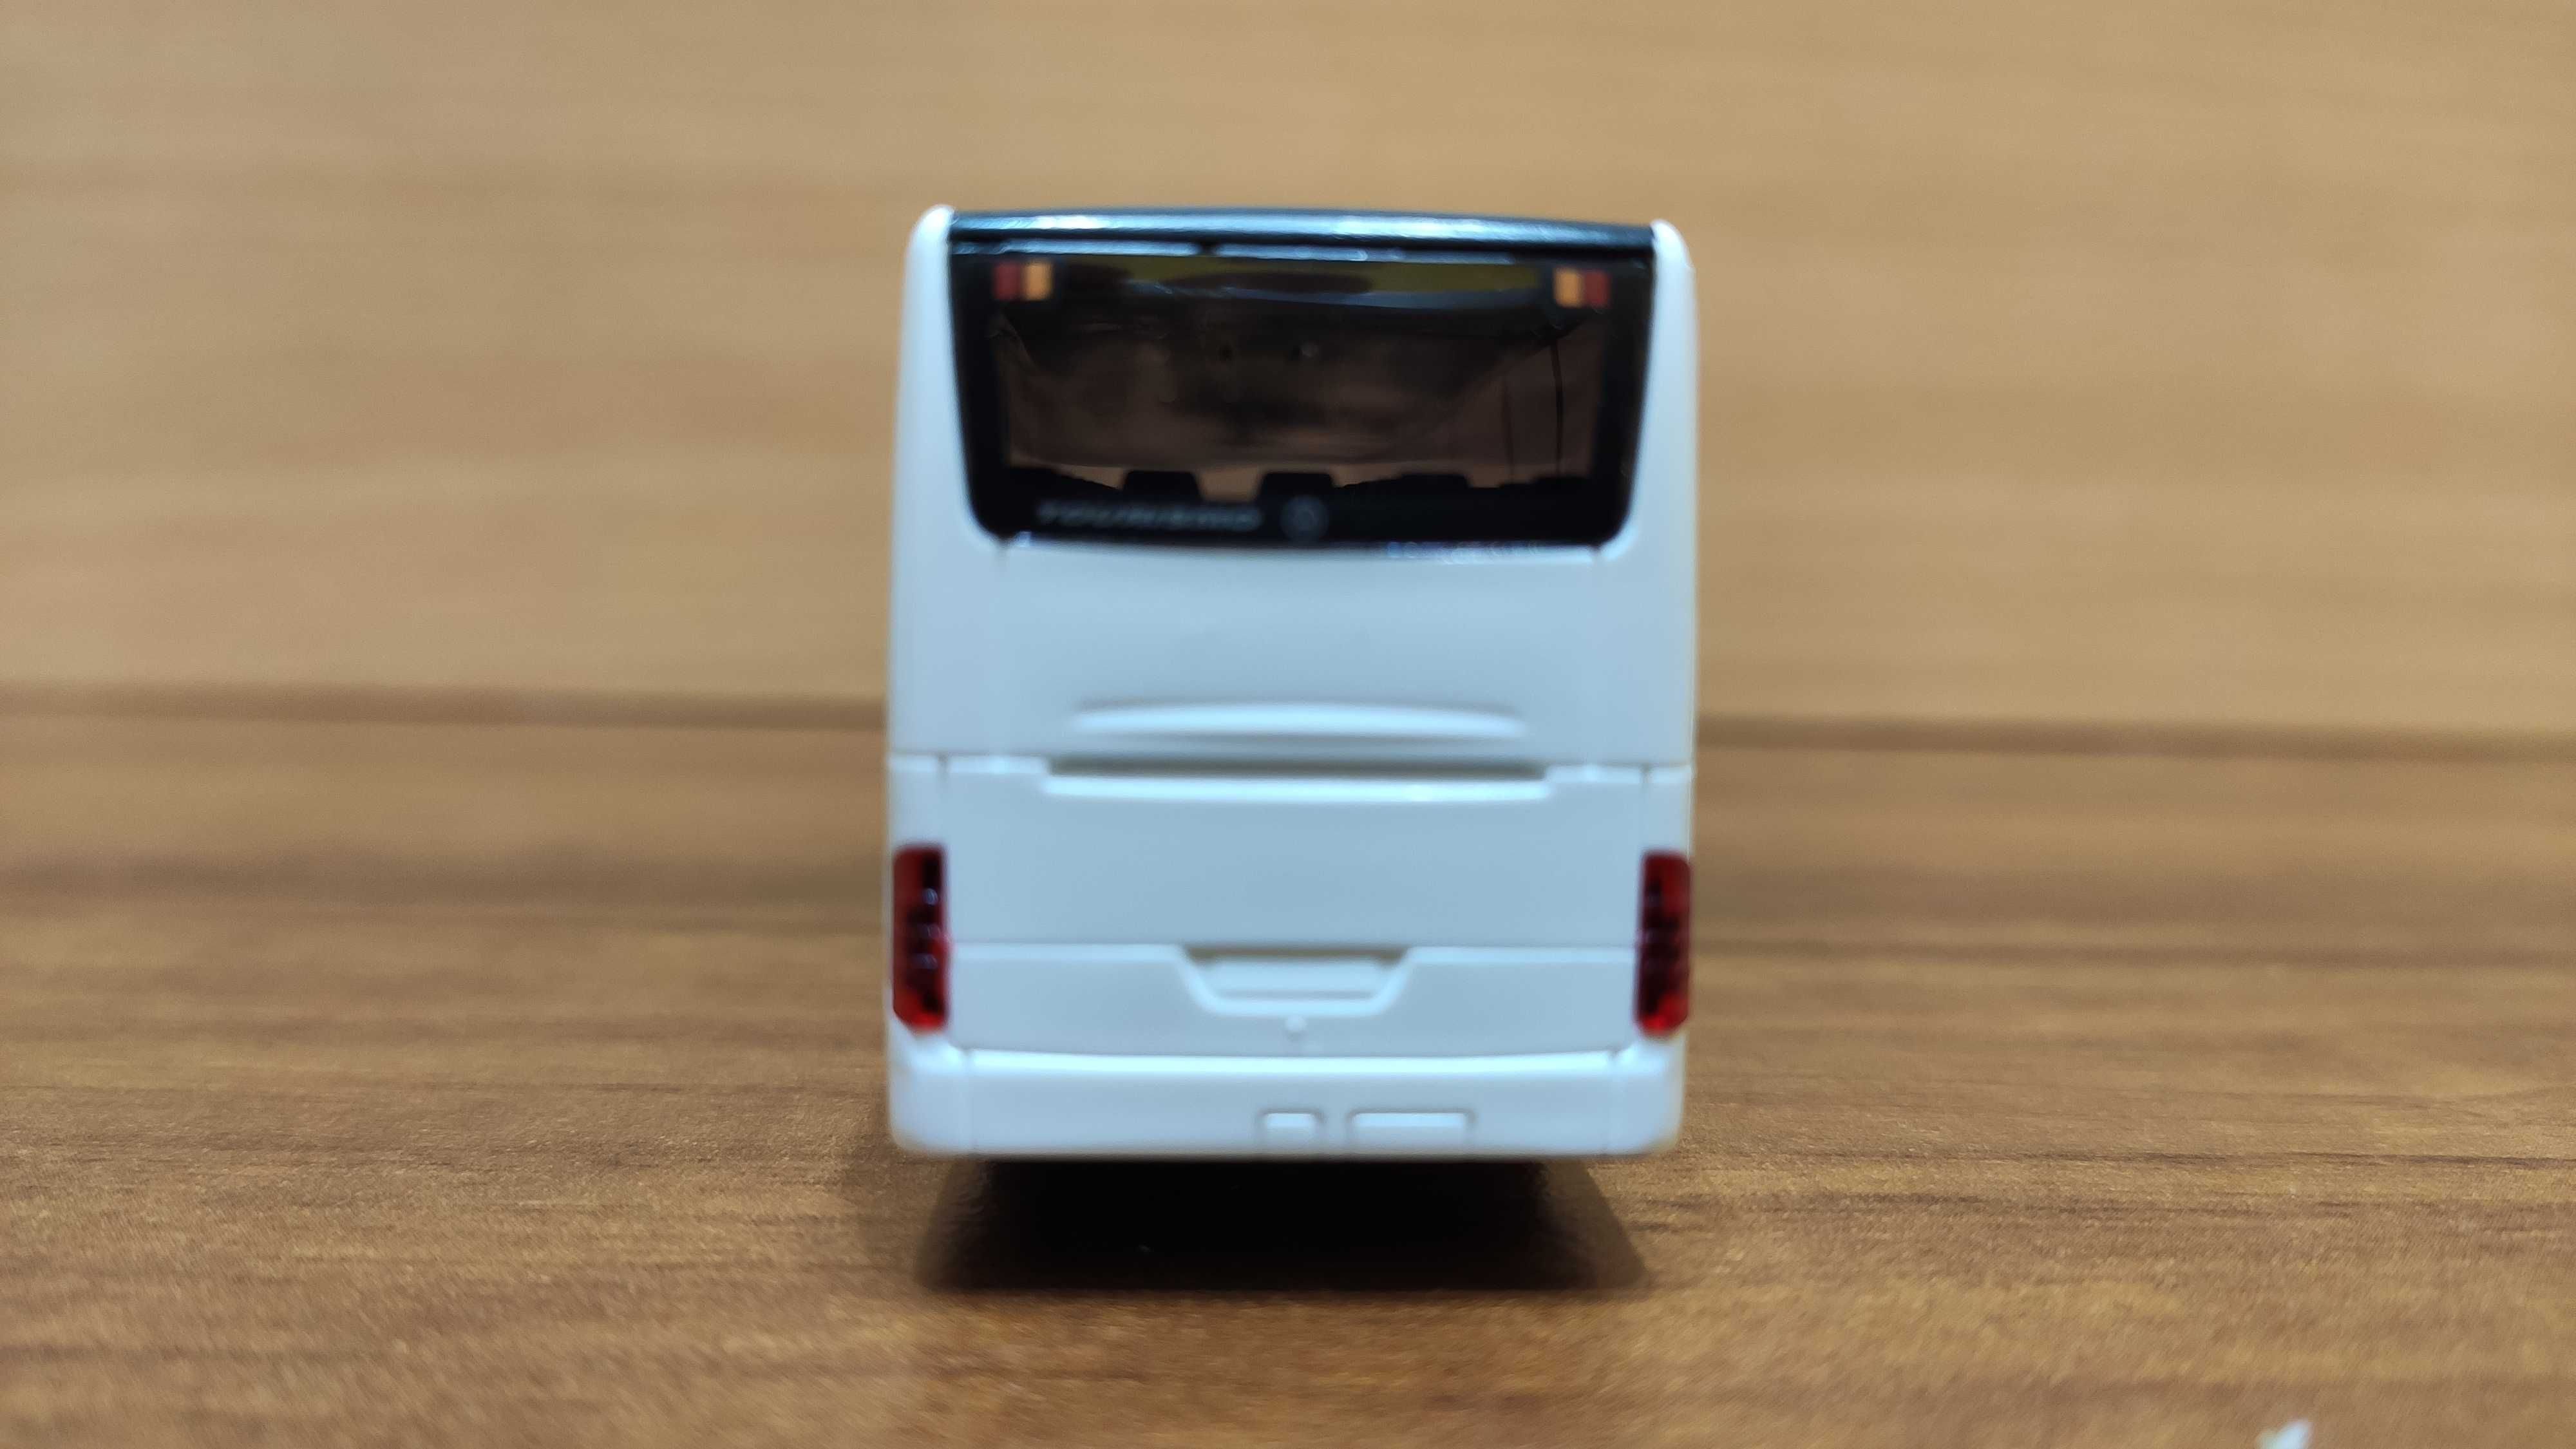 Model autobusu: Mercedes Benz Tourismo - H.Klügel Kunststoffteil [AWM]